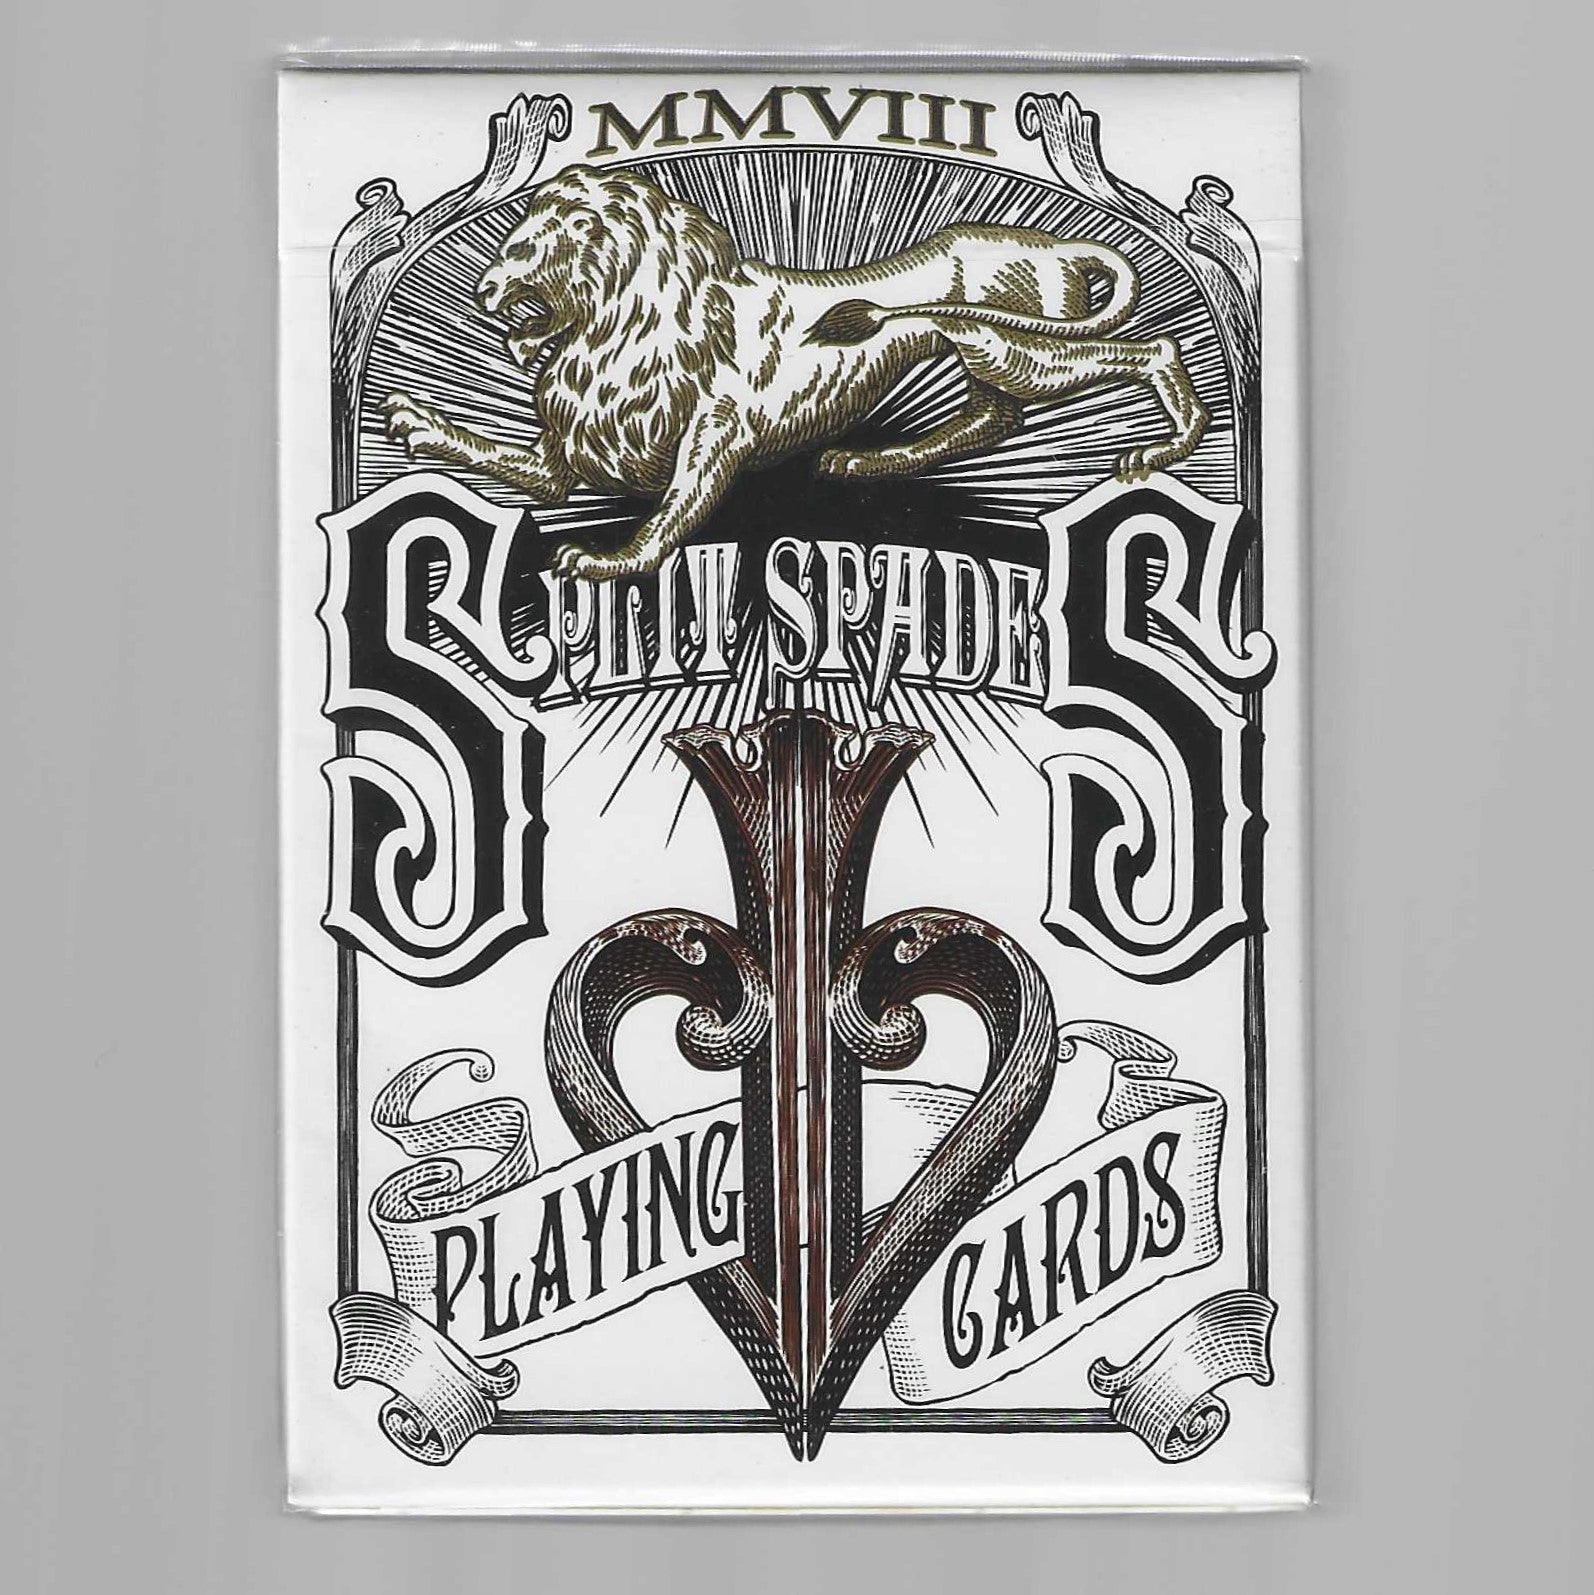 Split Spades (Sepia) [AUCTION]